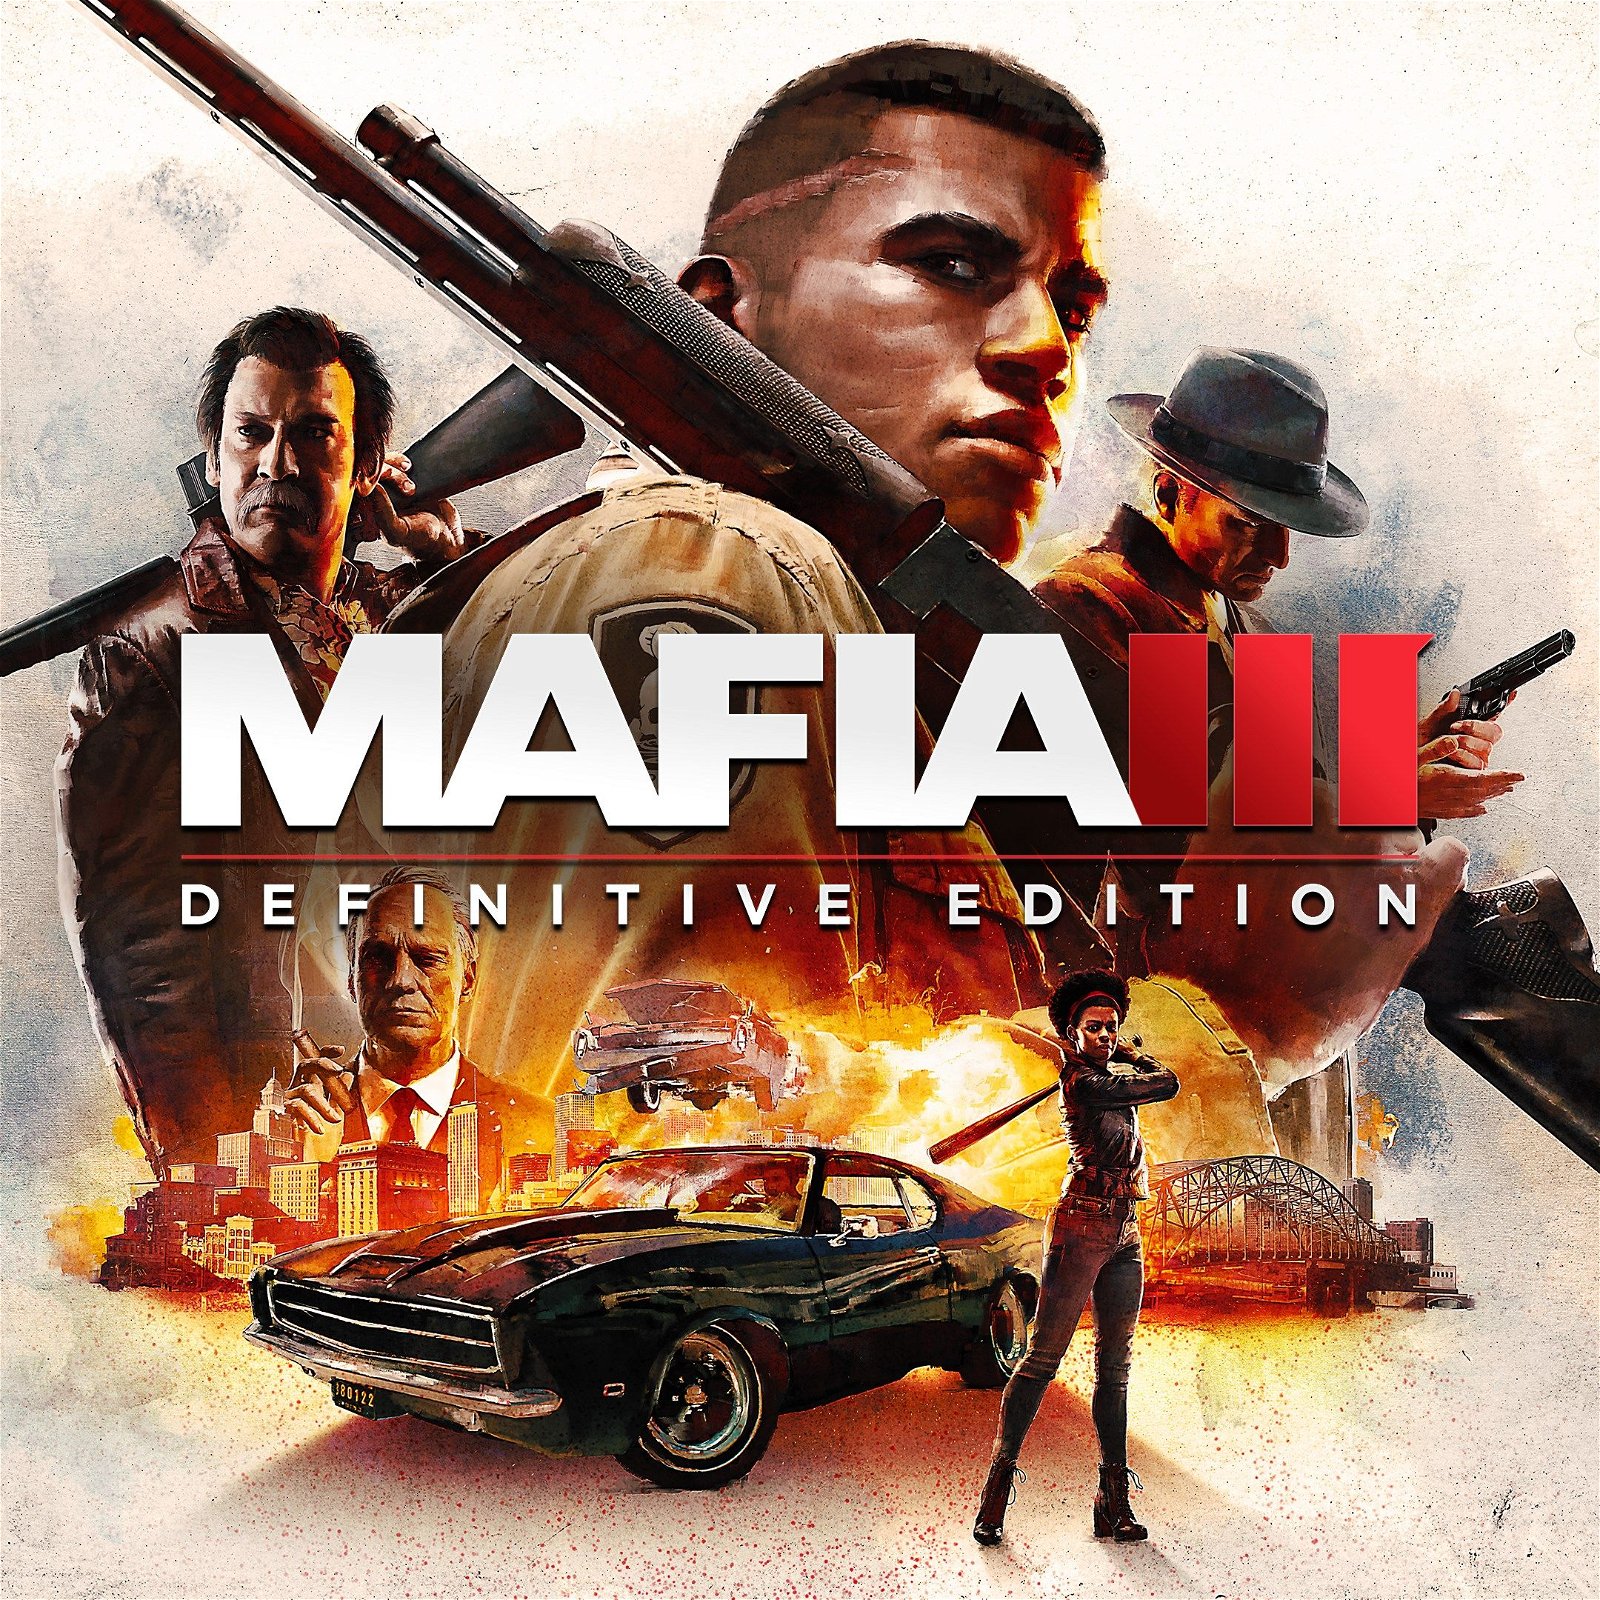 Image of Mafia III: Definitive Edition